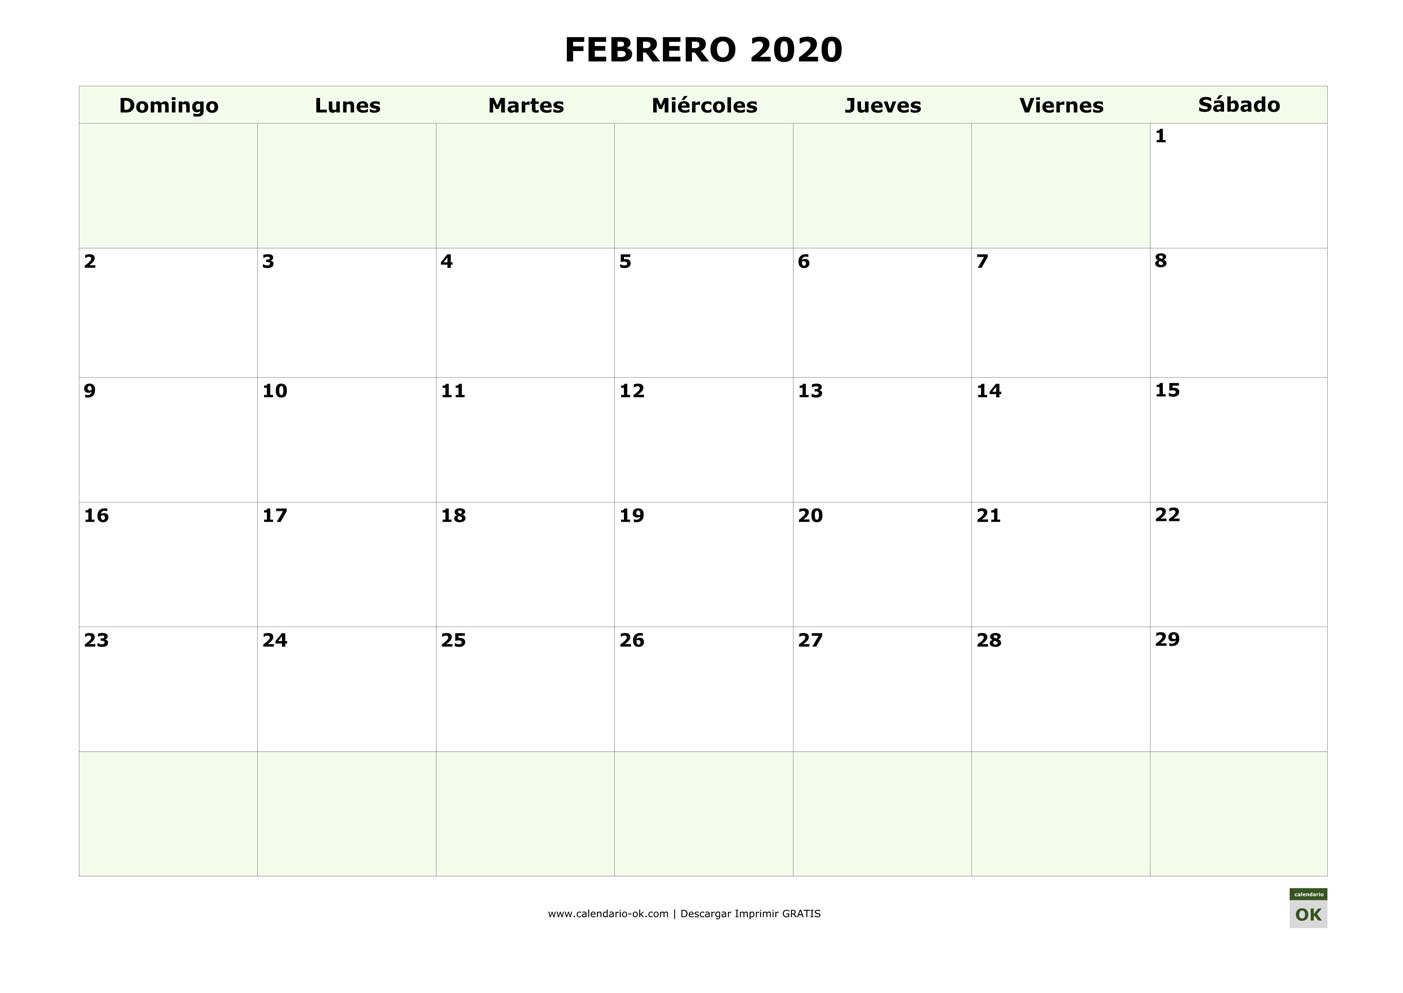 FEBRERO 2020 empieza por DOMINGO